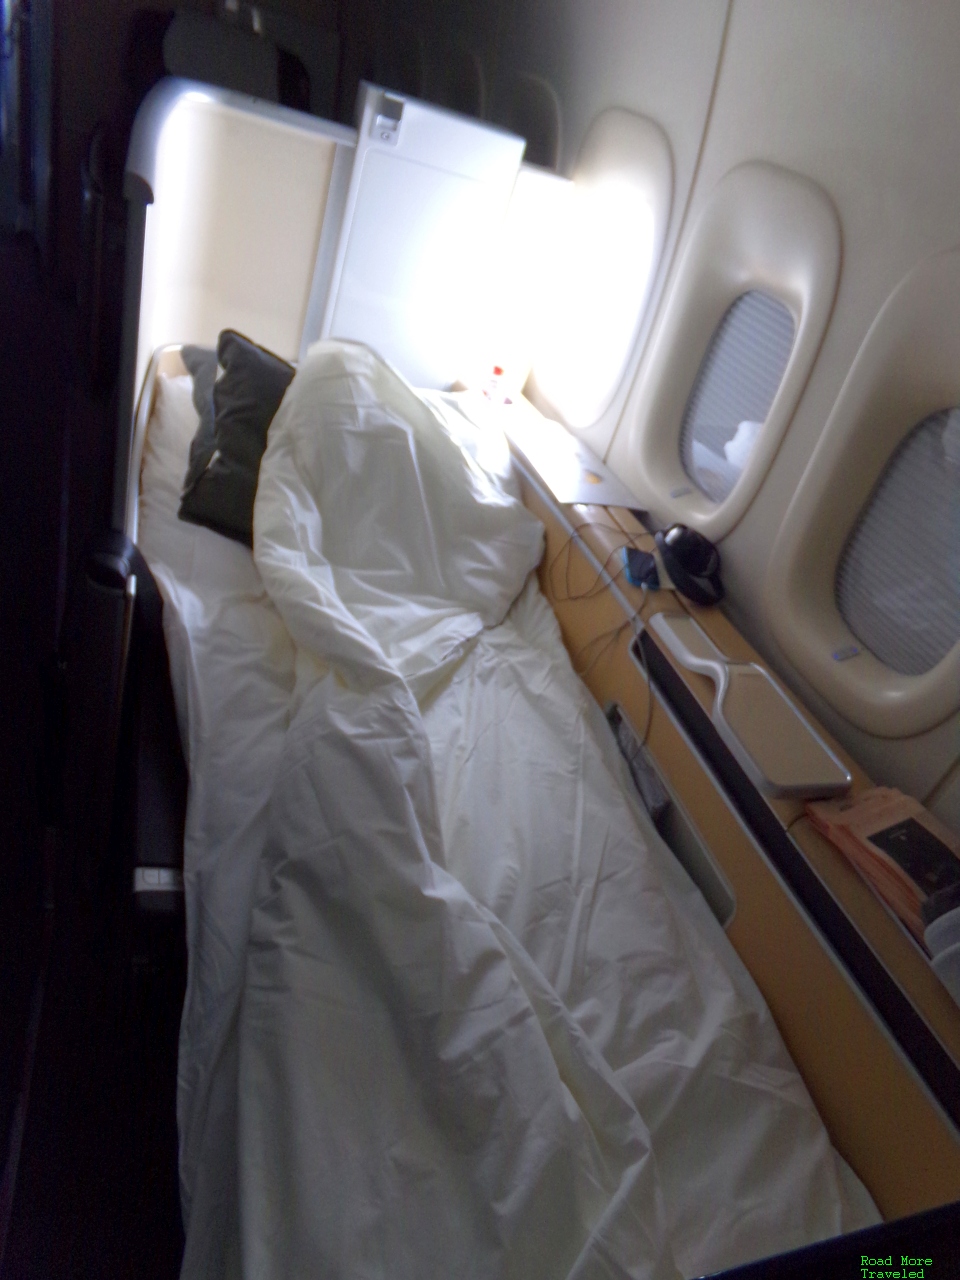 Lufthansa First Class flat bed